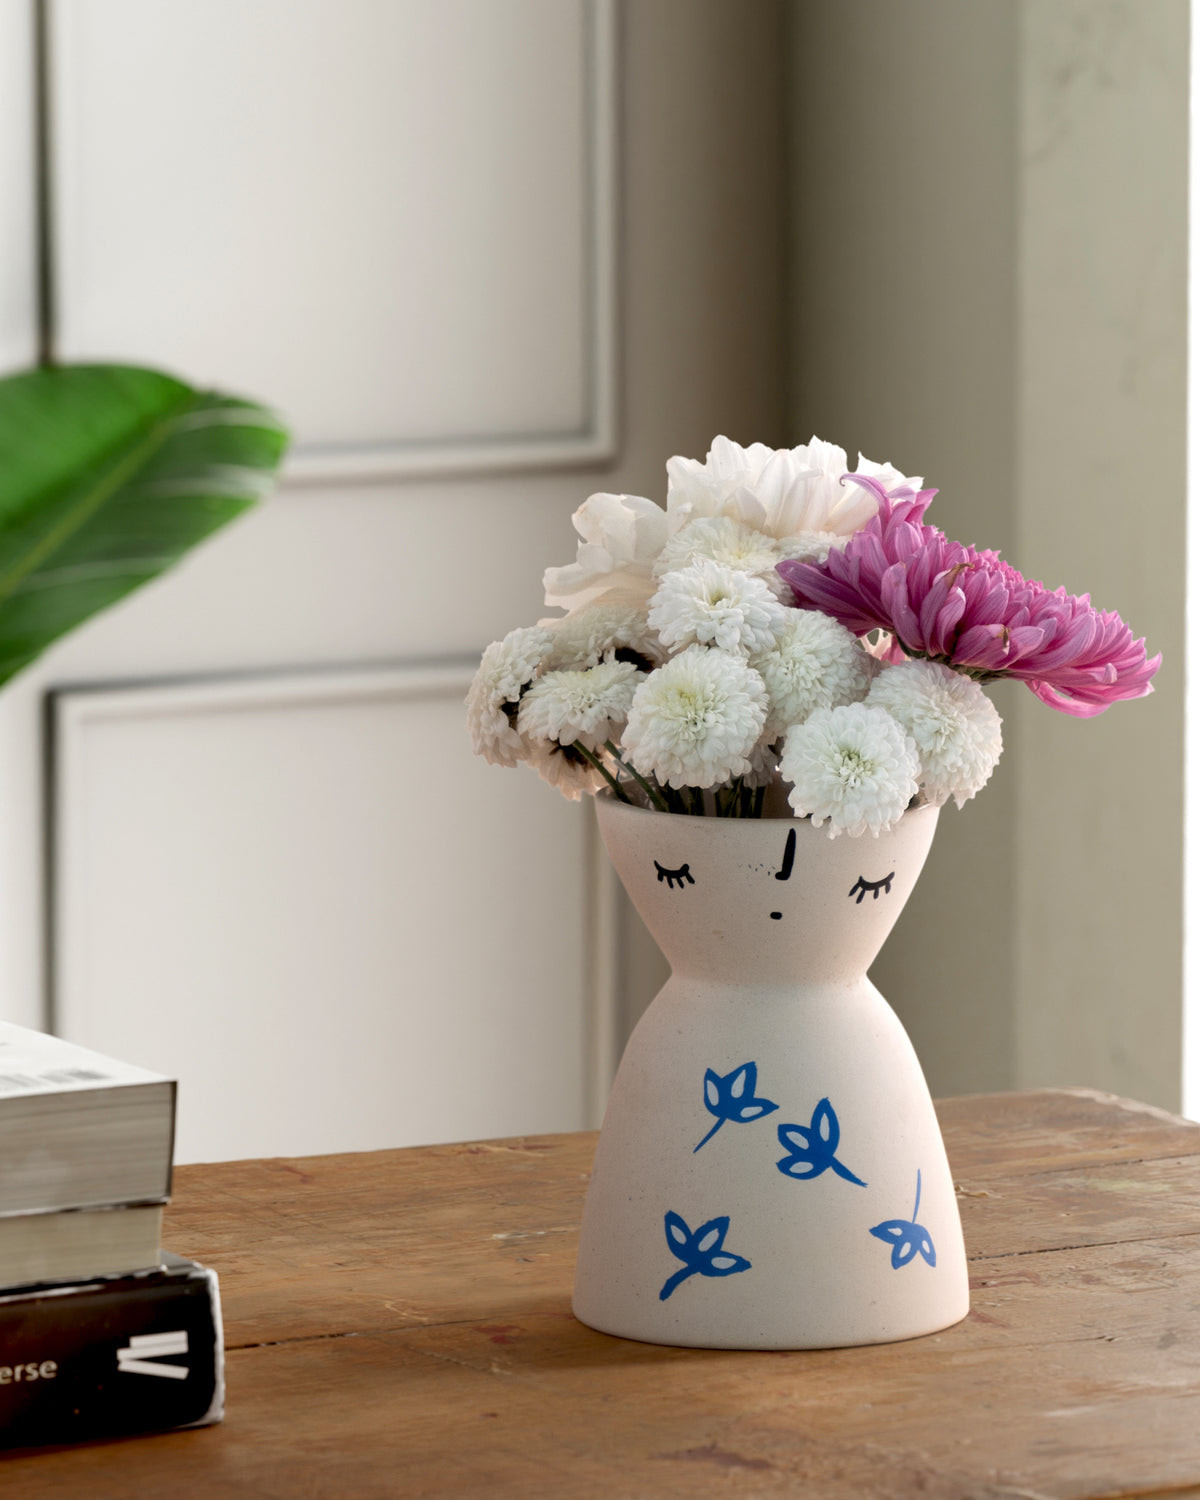 White Ceramic Flower Vase with Scattered Blue Leaves 5x4